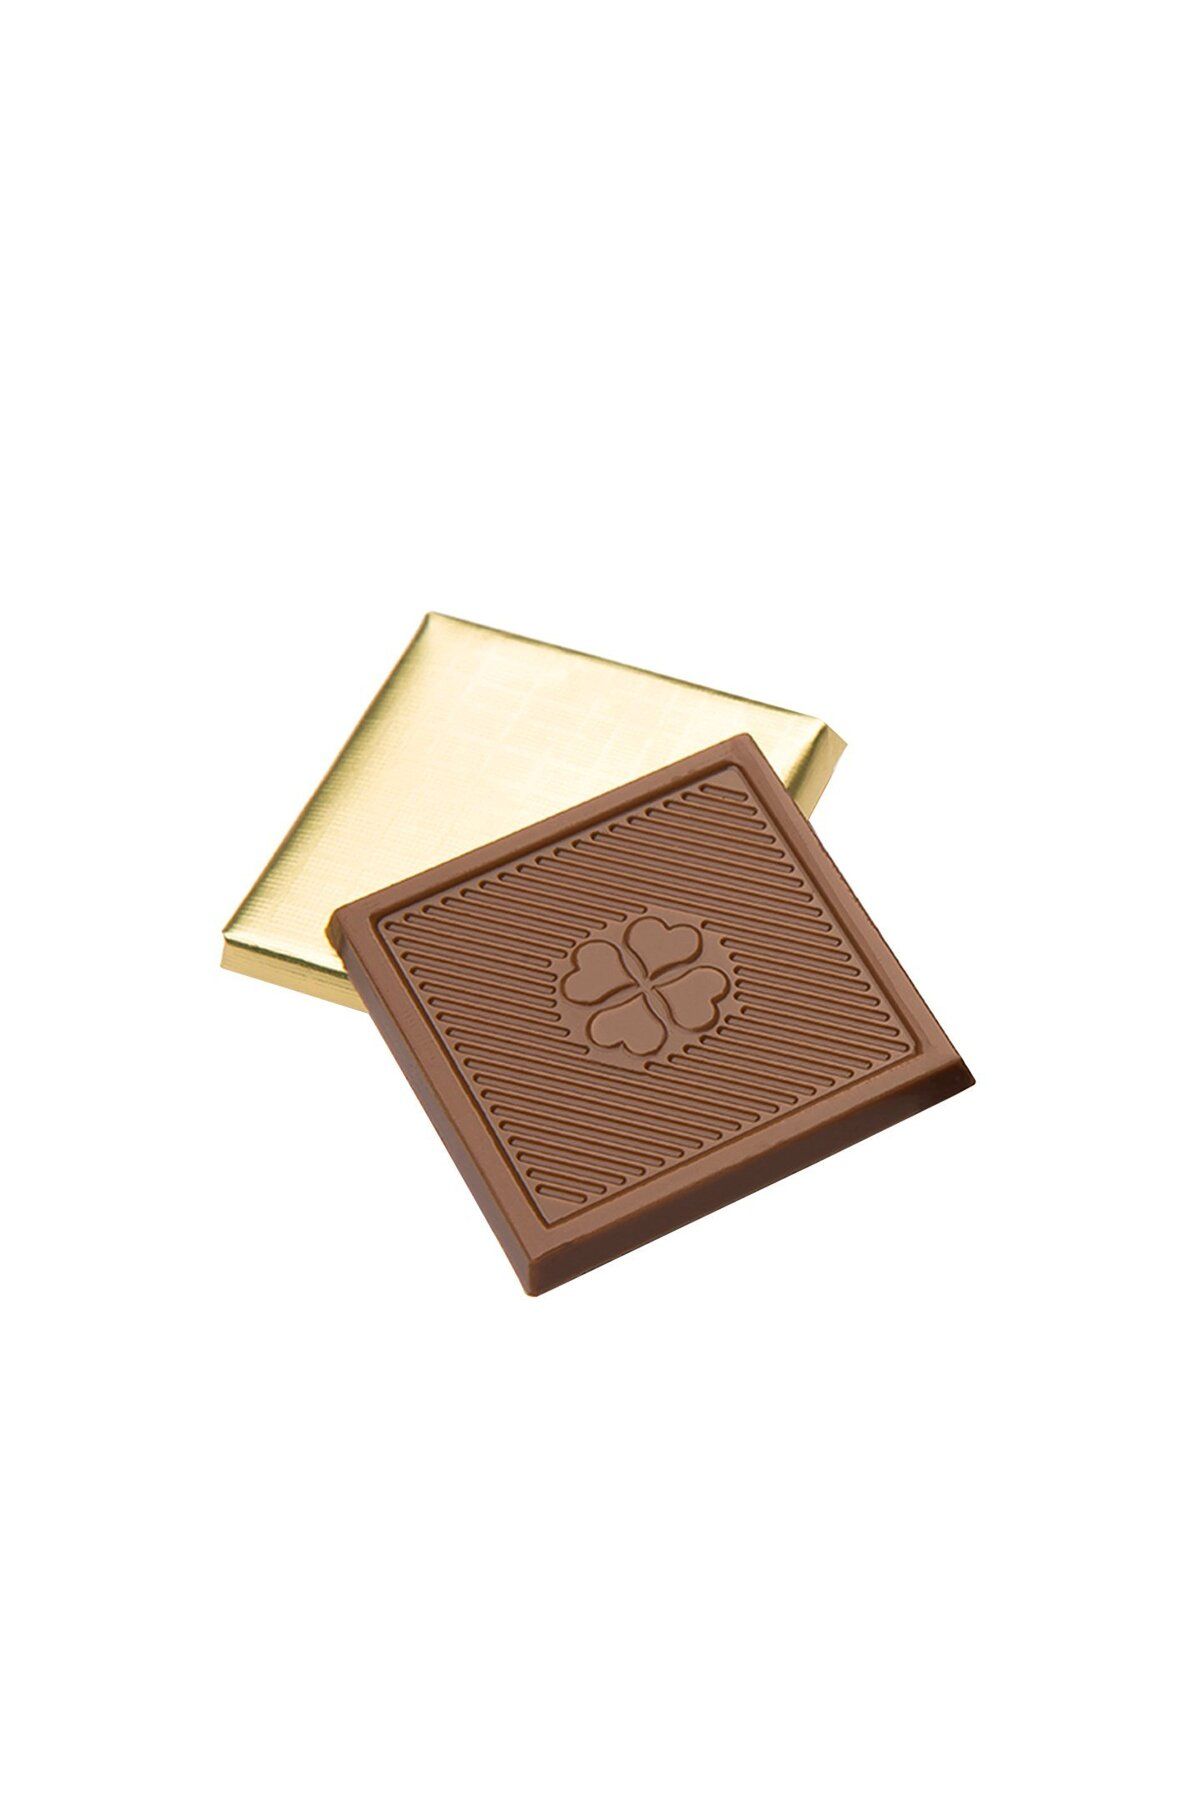 Melodi Çikolata Sargılı Sütlü Madlen Altın 500g - Ikramlık Çikolata